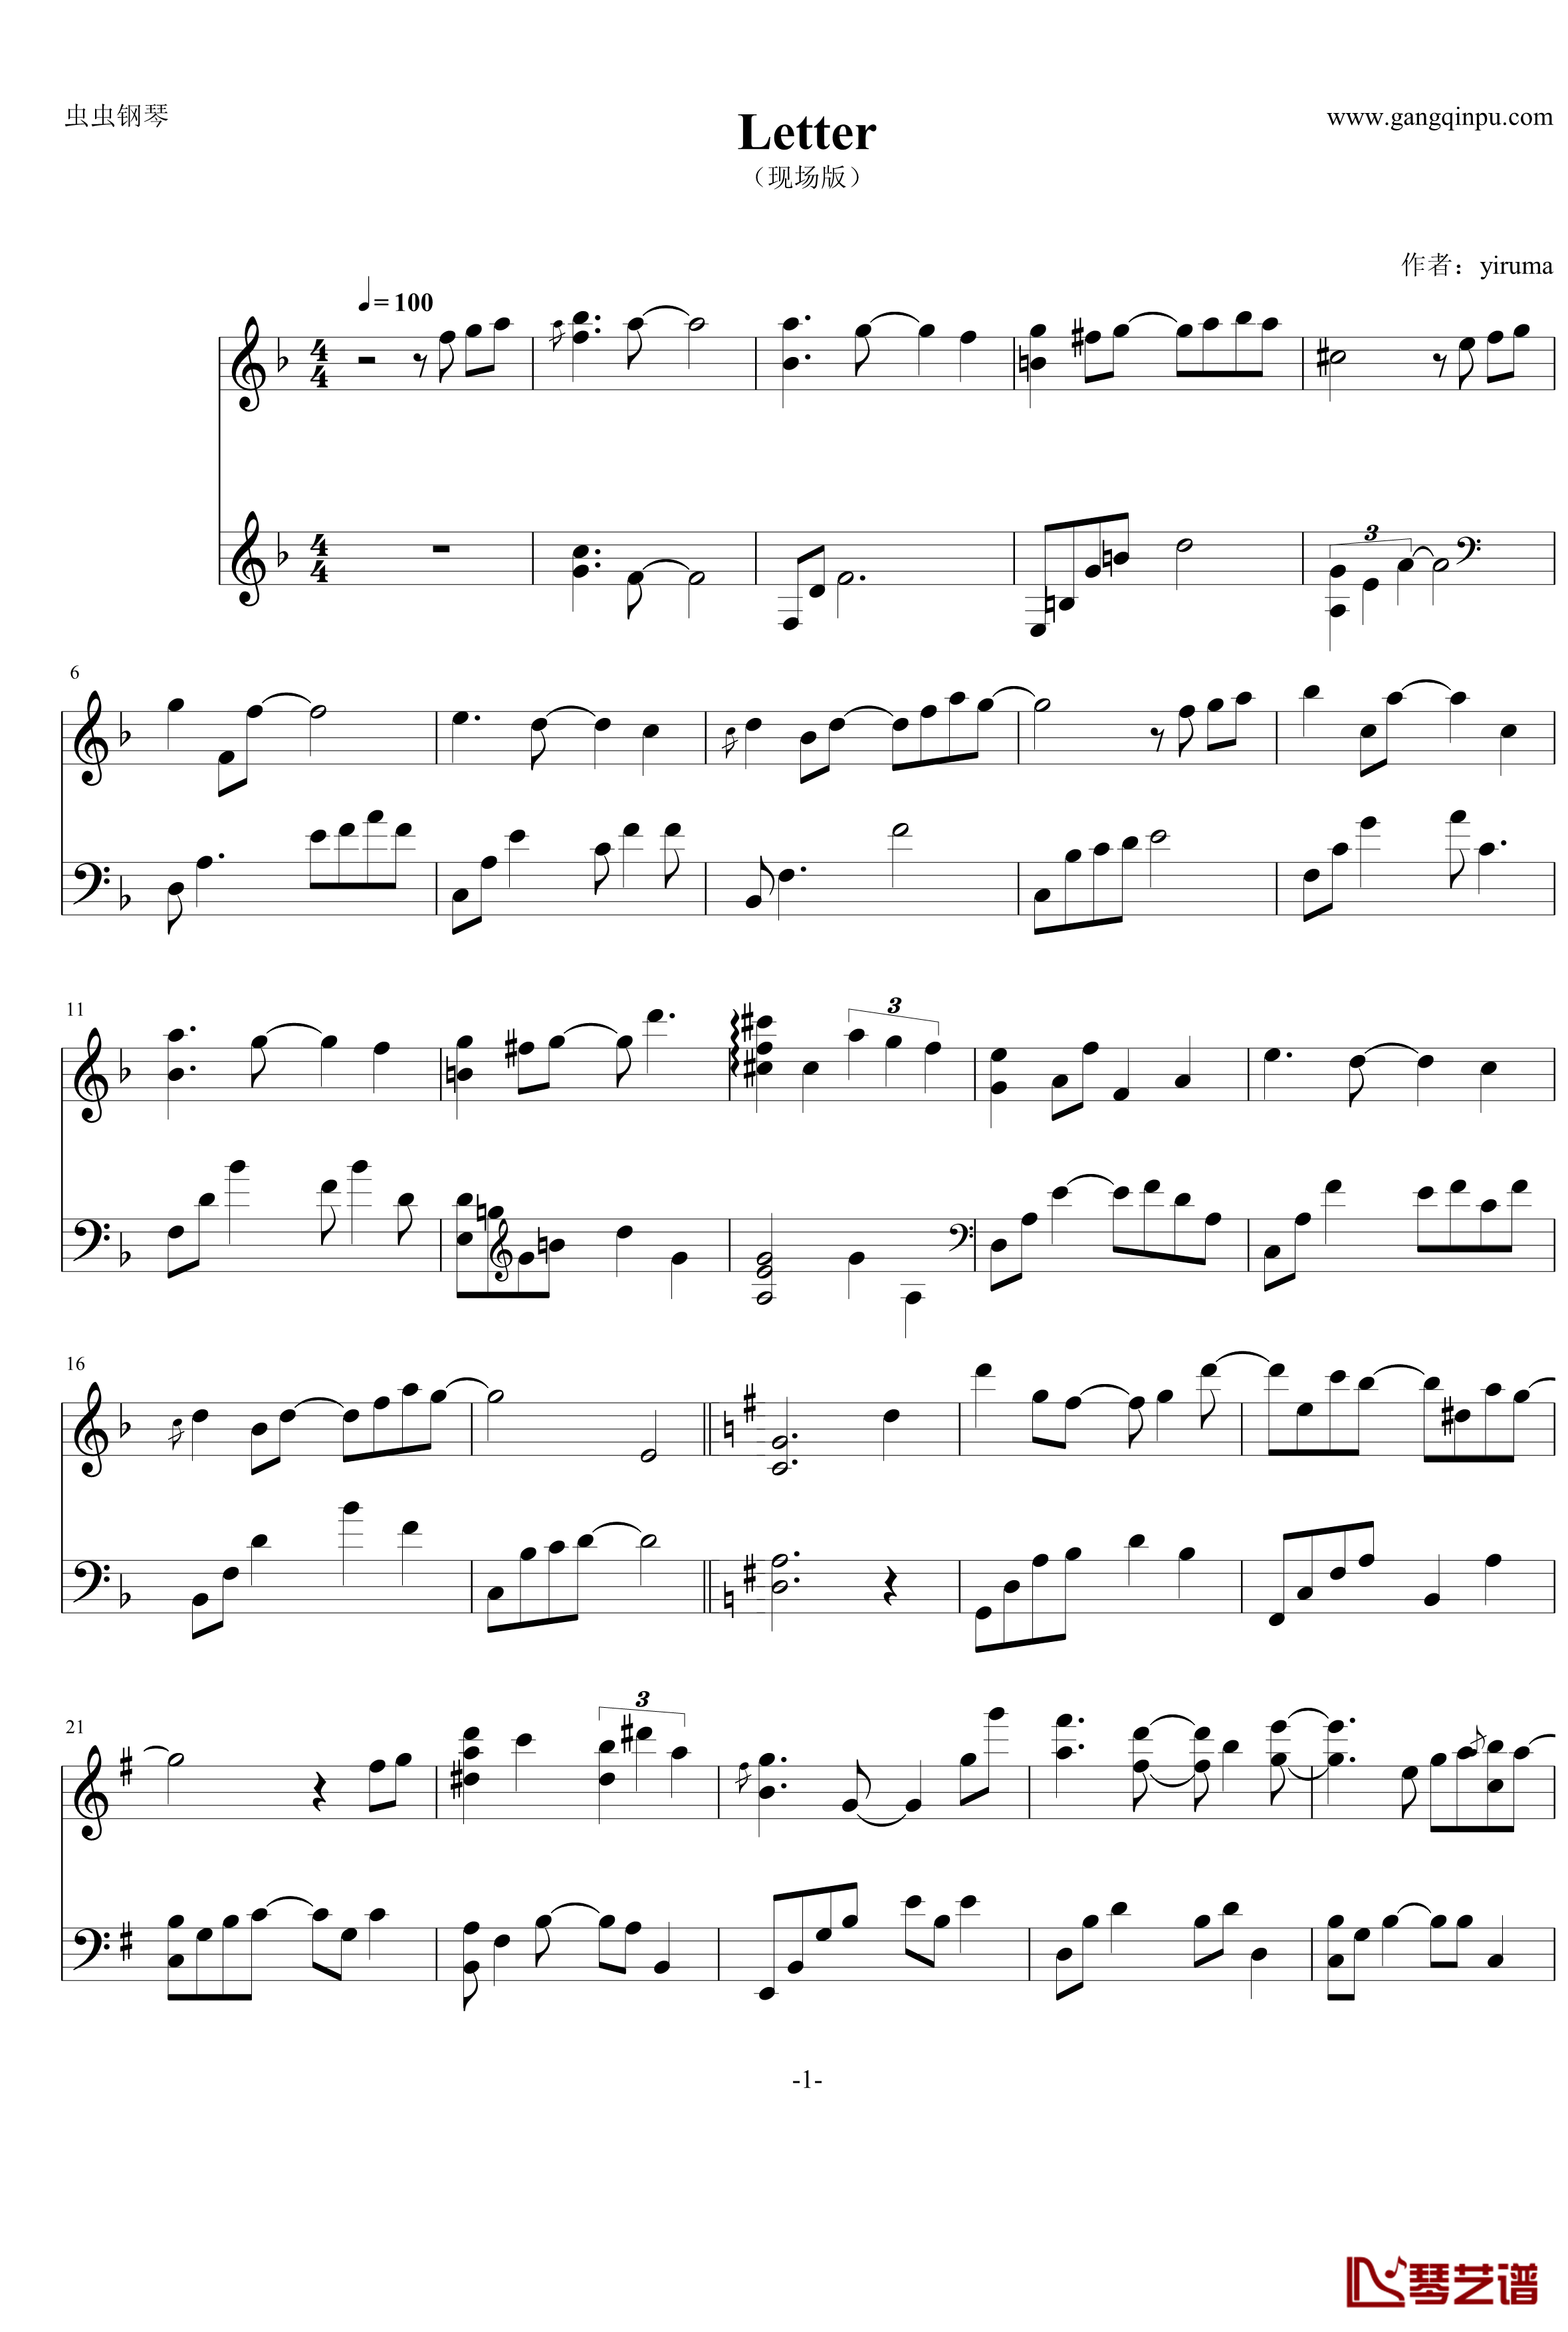 letter钢琴谱-演奏会live版本-Yiruma1